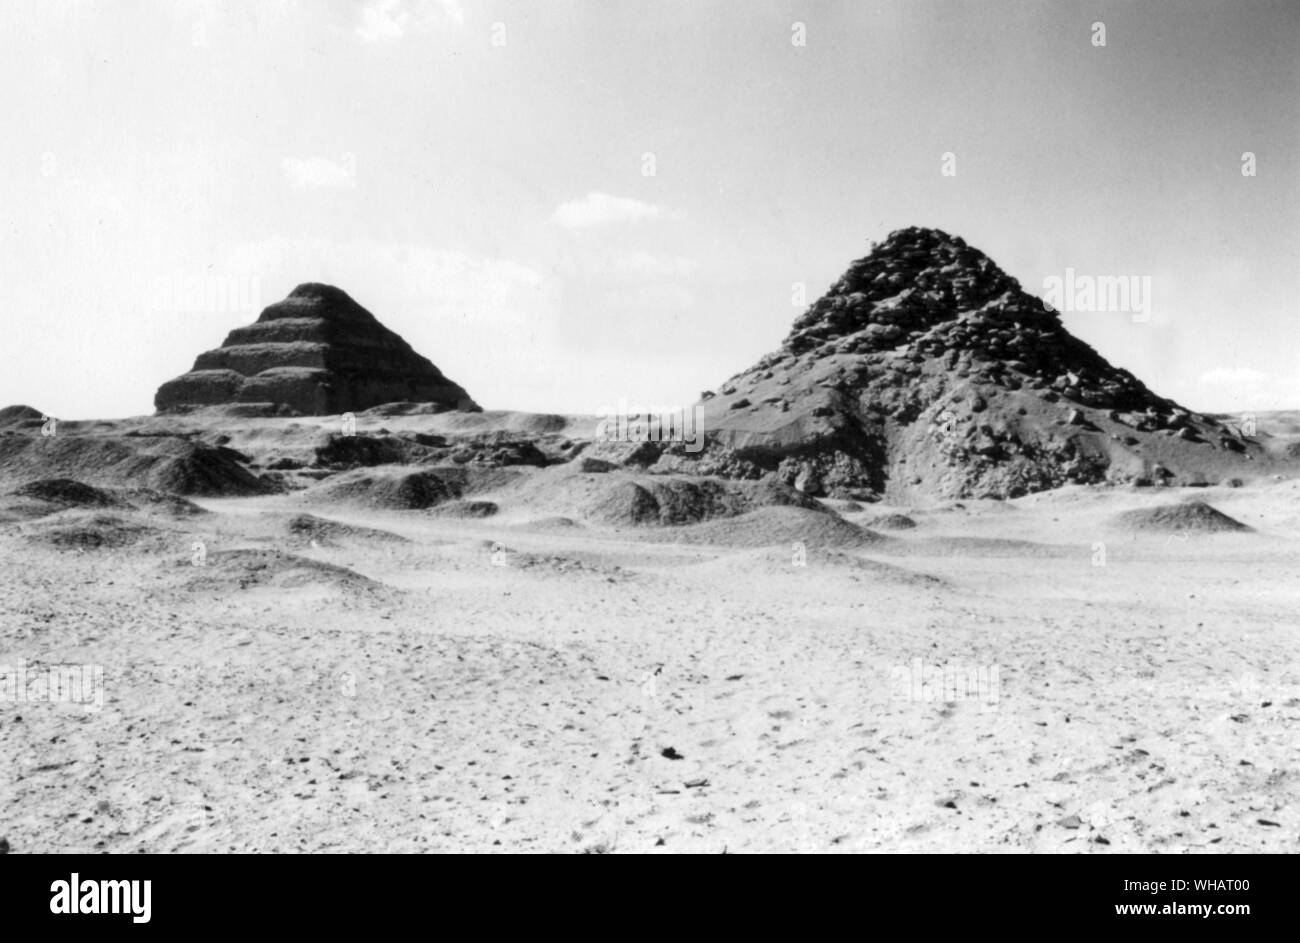 Schritt Pyramide von Zoser, Sakkara. Dynastie III c 2650 BC. Über den großen Hof des Pyramidenkomplexes von Djoser (zoser) (2667-2648 v. Chr.), der zweite König von der dritten Dynastie, steht die Stufenpyramide in Sakkara, in der Nähe des heutigen Kairo. Es wird geglaubt, von einem Mann, Imhotep erstellt worden zu sein. Er wurde als Arzt, Salbei, Architekten, Astronomen und Hohepriester. Bei einer Ausgrabung in 1924-26, einen Sockel der Statue von Djoser (zoser) gefunden wurde. Dieser Komplex stellt die erste große Arbeit in Stein. Es sei denn, es gibt andere Werke, die noch gefunden werden müssen. . . Stockfoto